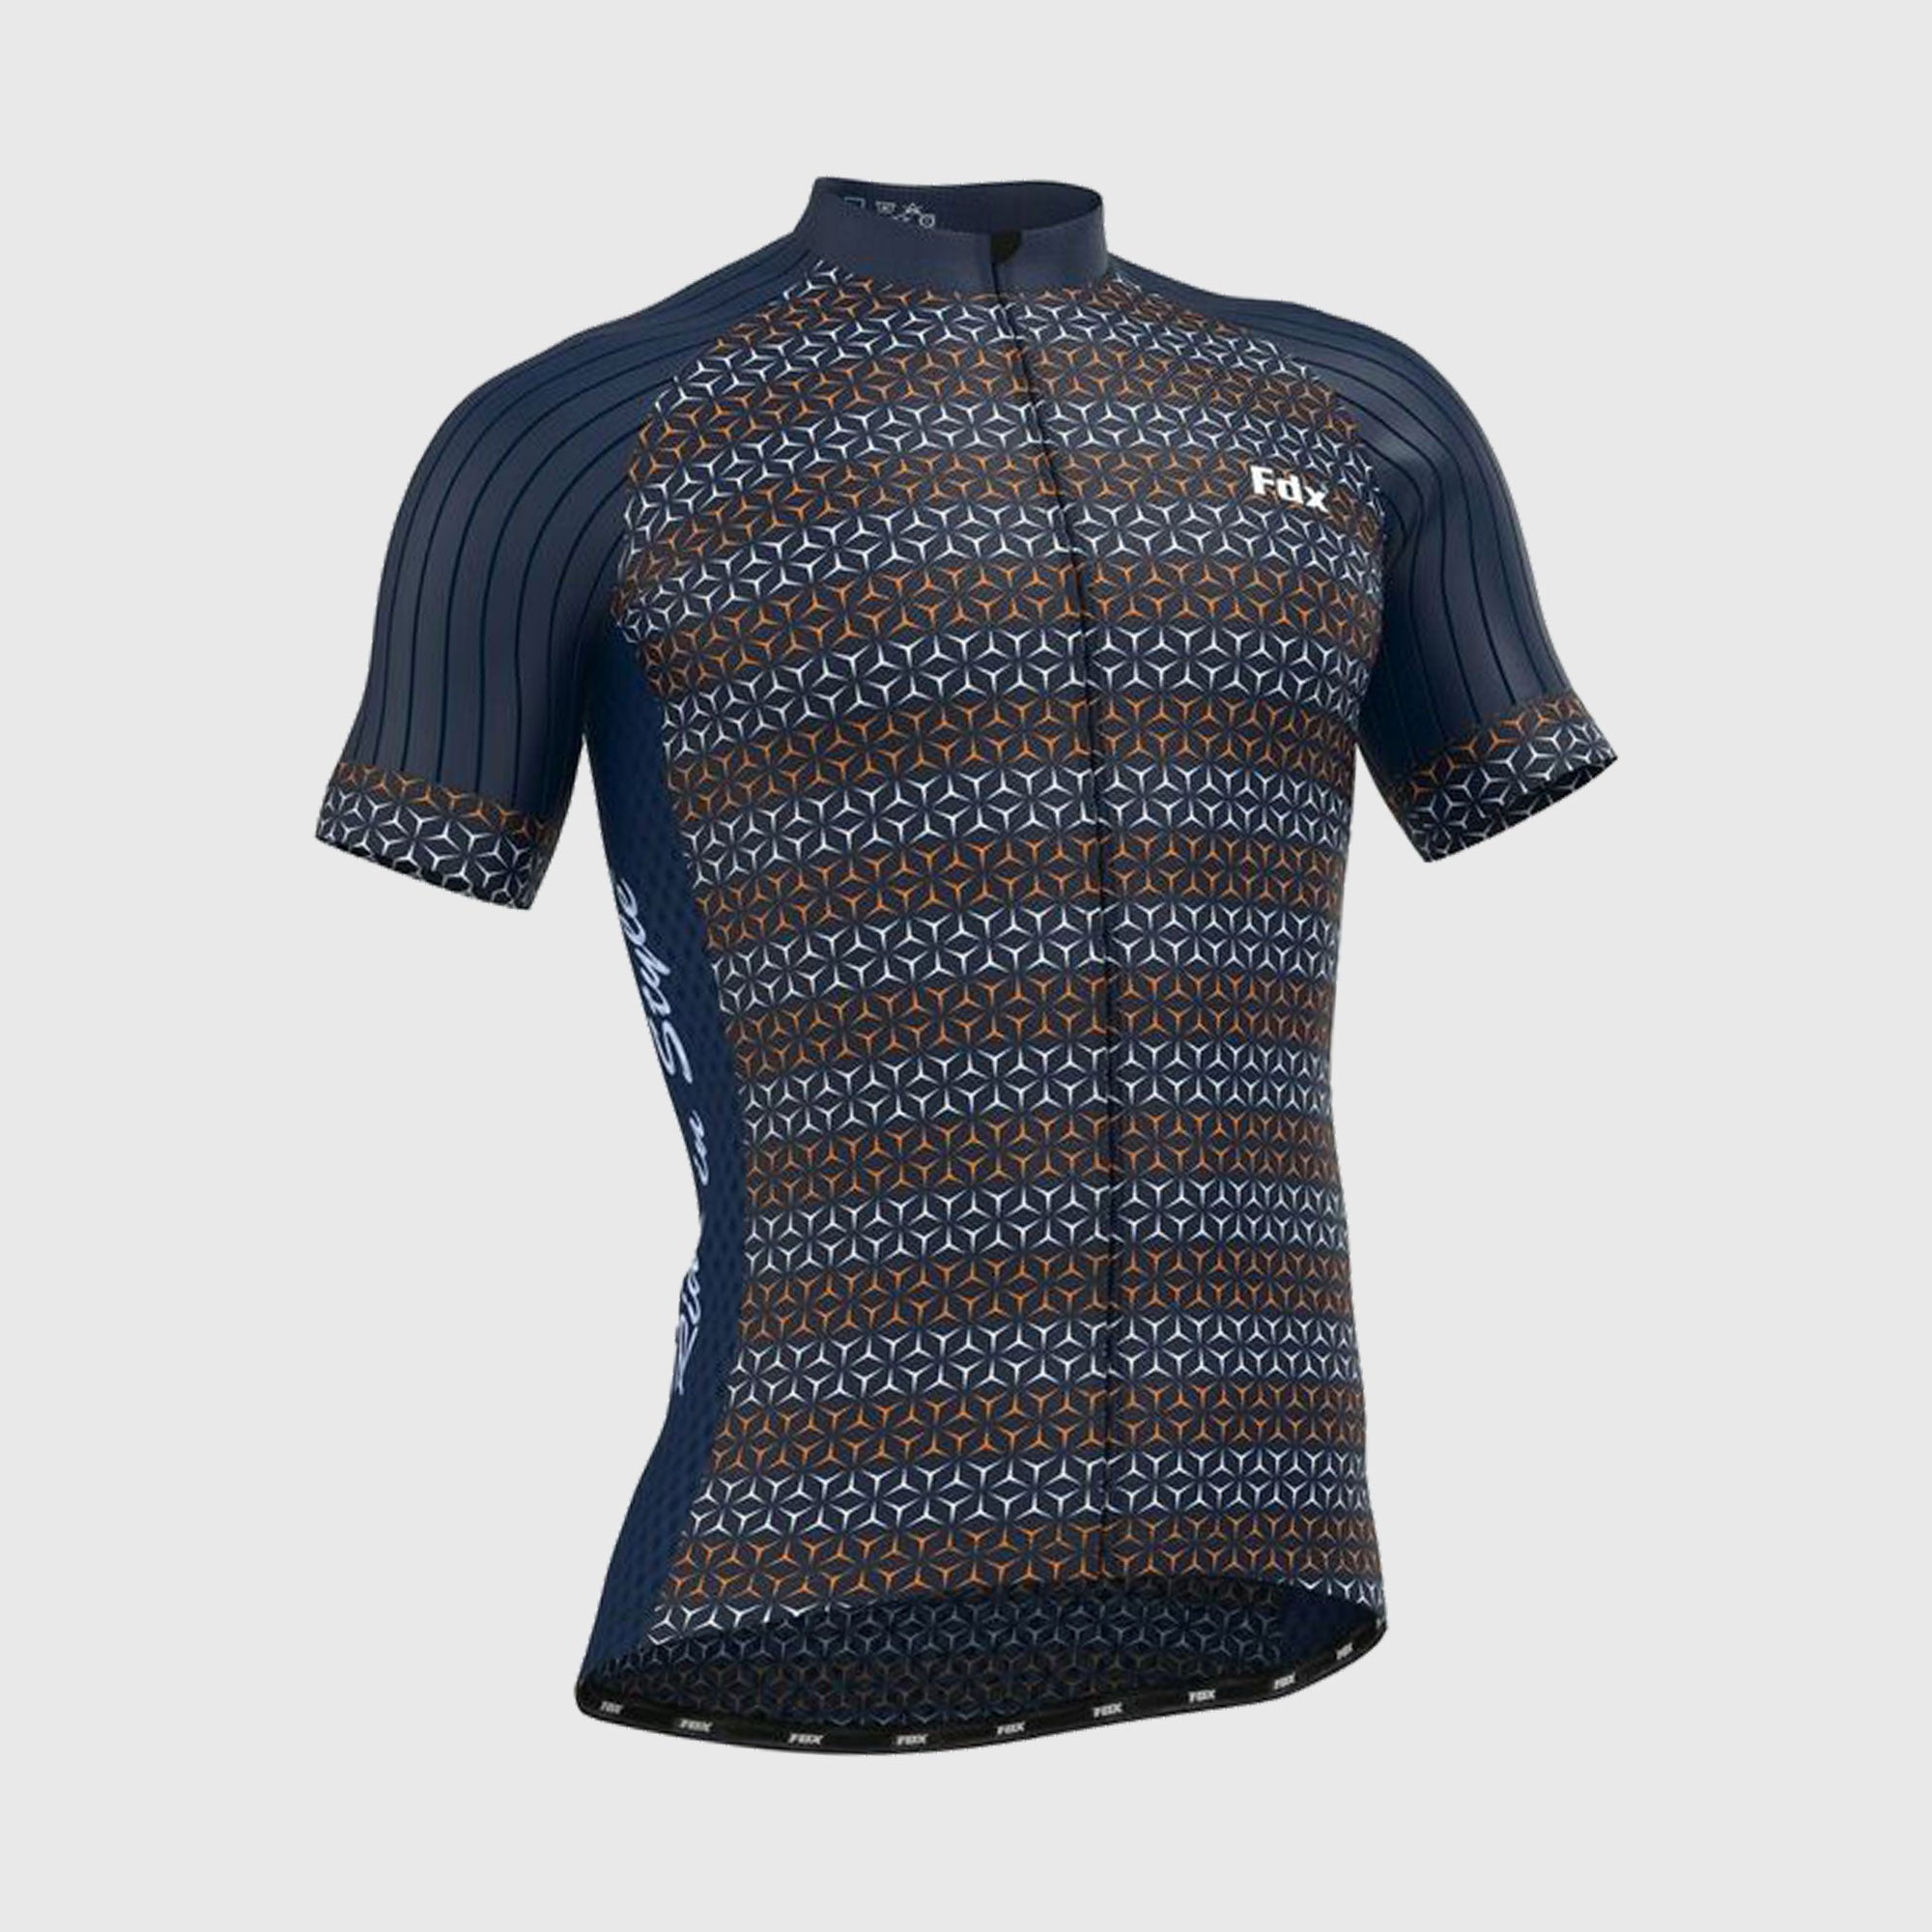 Fdx Mens Blue Short Sleeve Cycling Jersey for Summer Best Road Bike Wear Top Light Weight, Full Zipper, Pockets & Hi-viz Reflectors - Vega